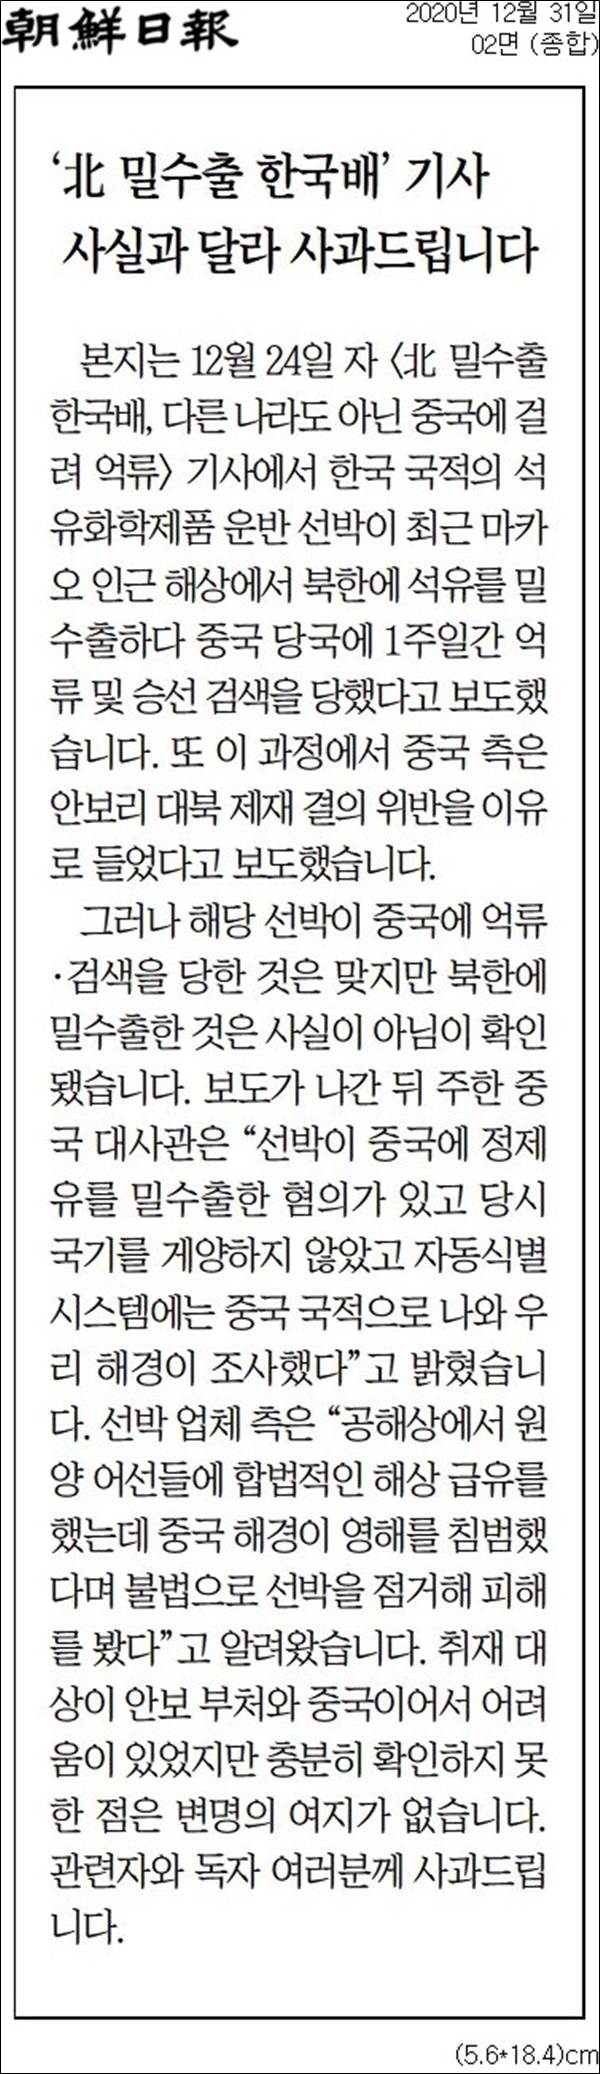 조선일보 ‘북한 석유 밀수출 한국 선박’ 보도 오보 인정 사과